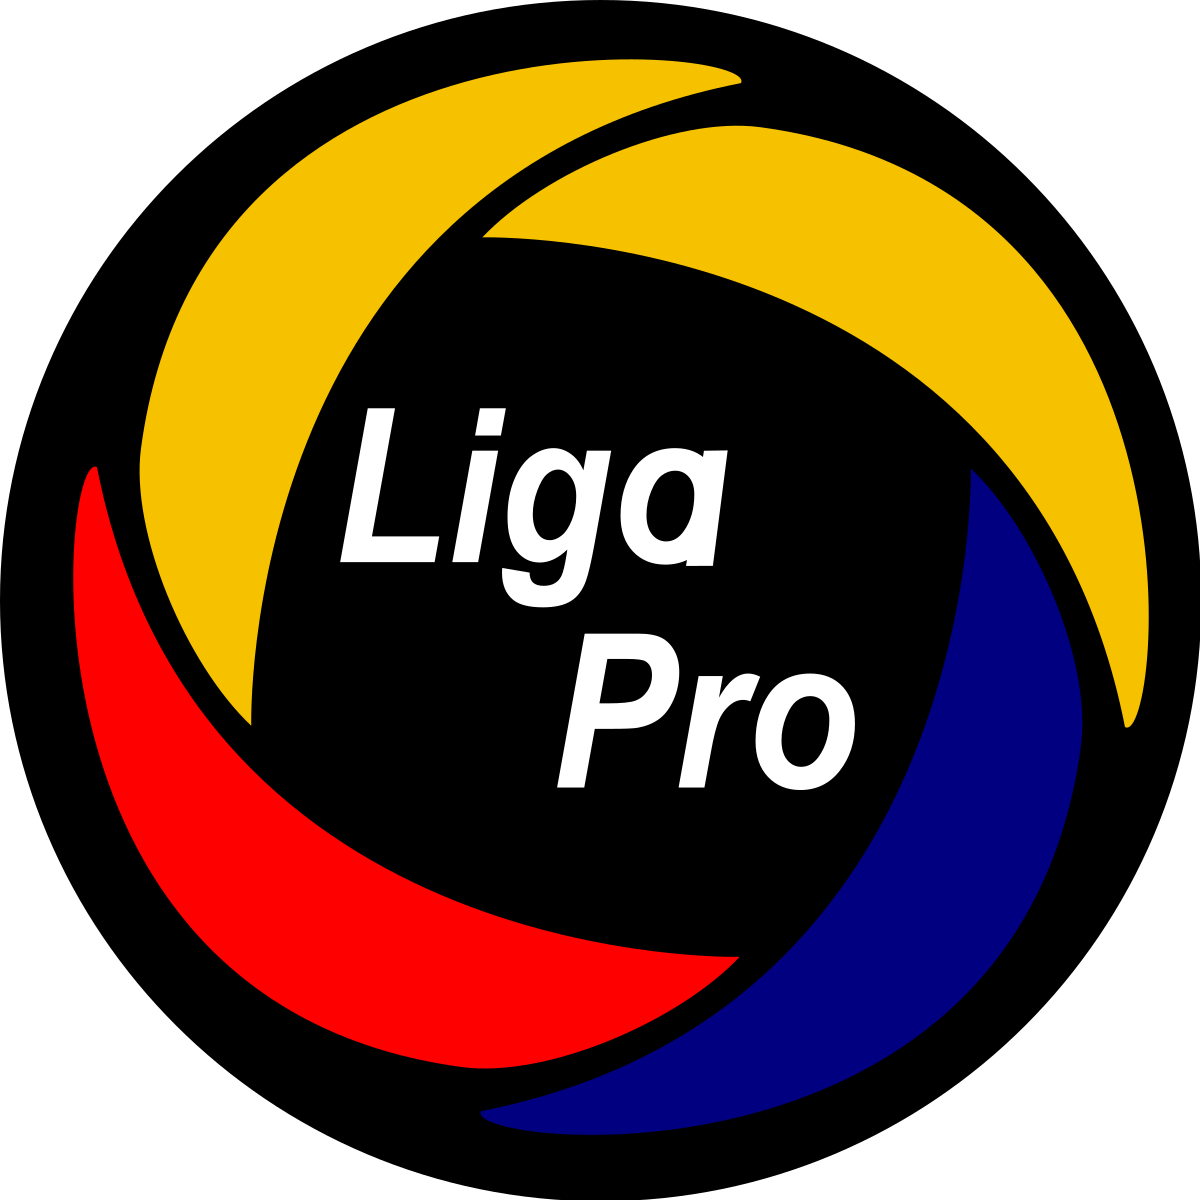 Liga Pro Ecuador logo